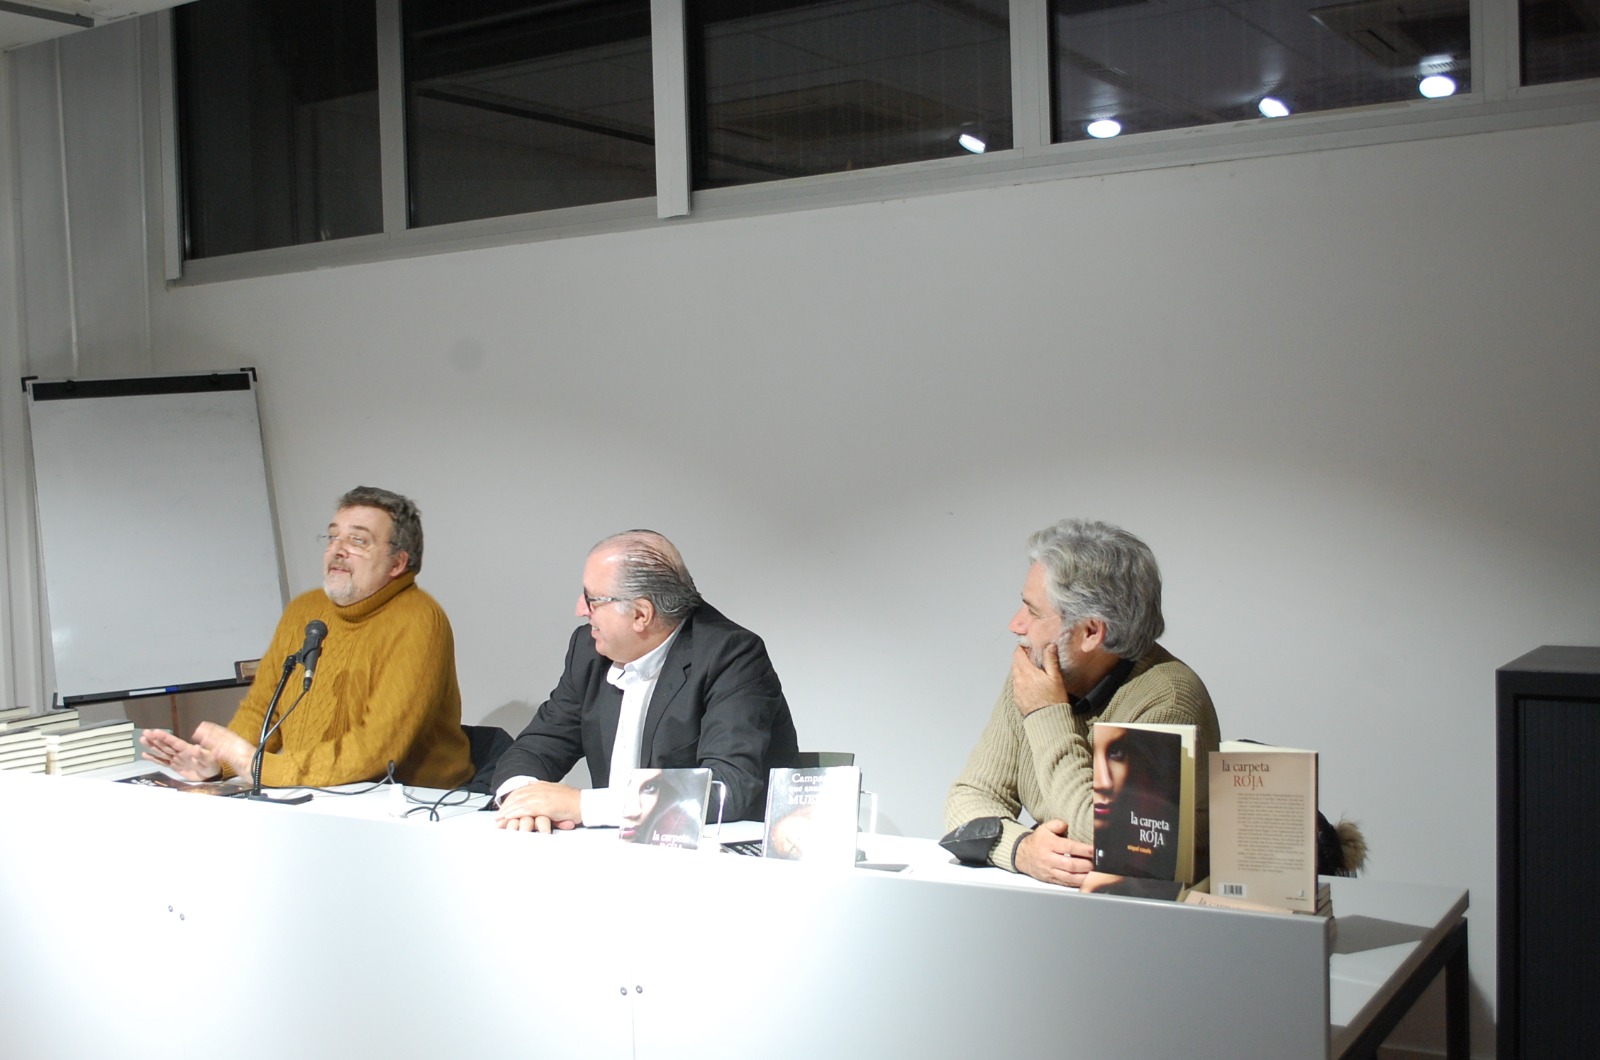 Presentaci dels llibres de Miquel Casals, dimarts 30 de novembre, diada de Sant Andreu